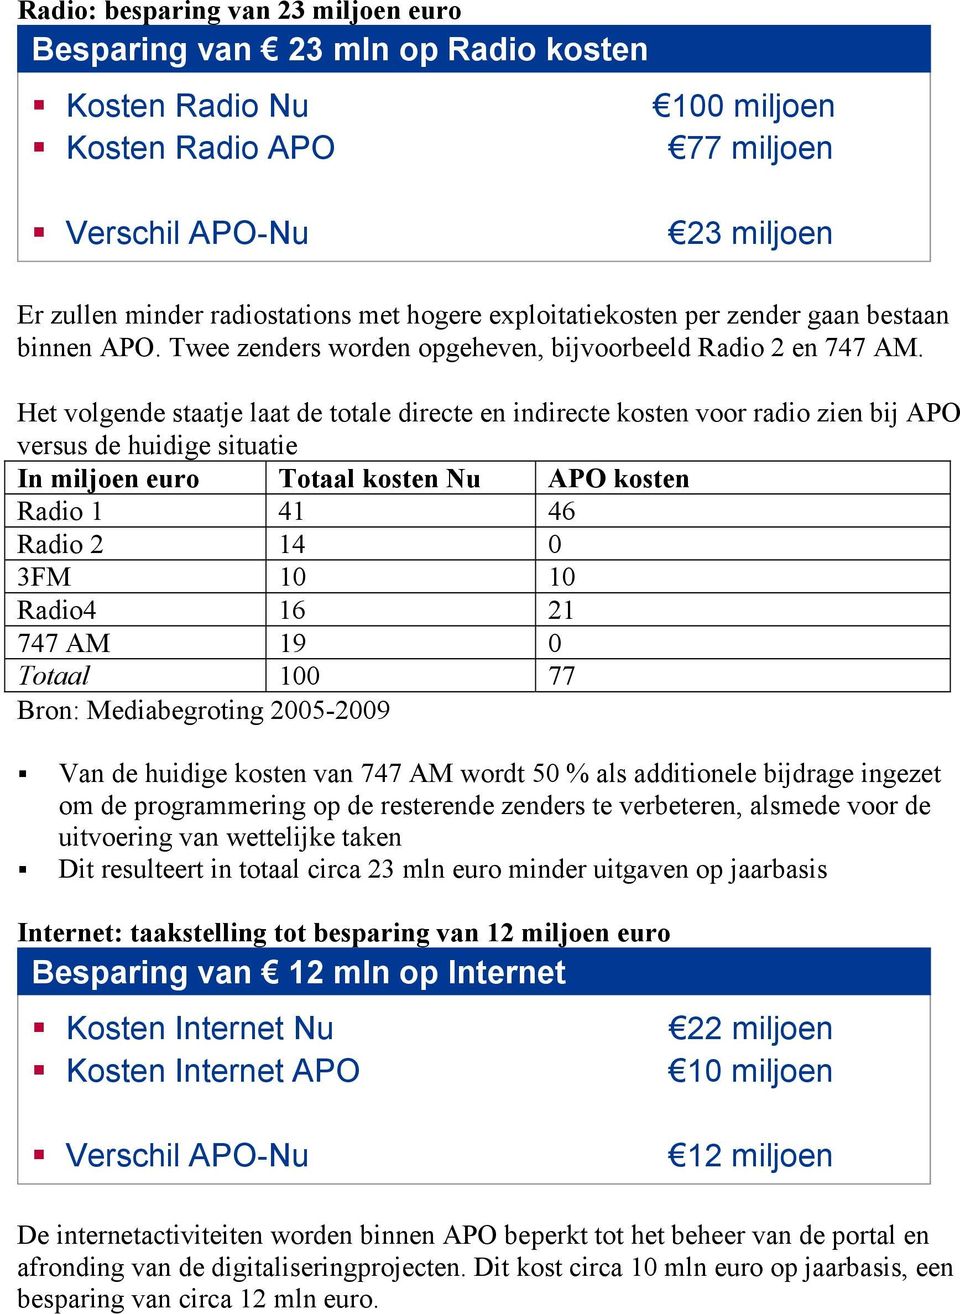 Het volgende staatje laat de totale directe en indirecte kosten voor radio zien bij APO versus de huidige situatie In miljoen euro Totaal kosten Nu APO kosten Radio 1 41 46 Radio 2 14 0 3FM 10 10